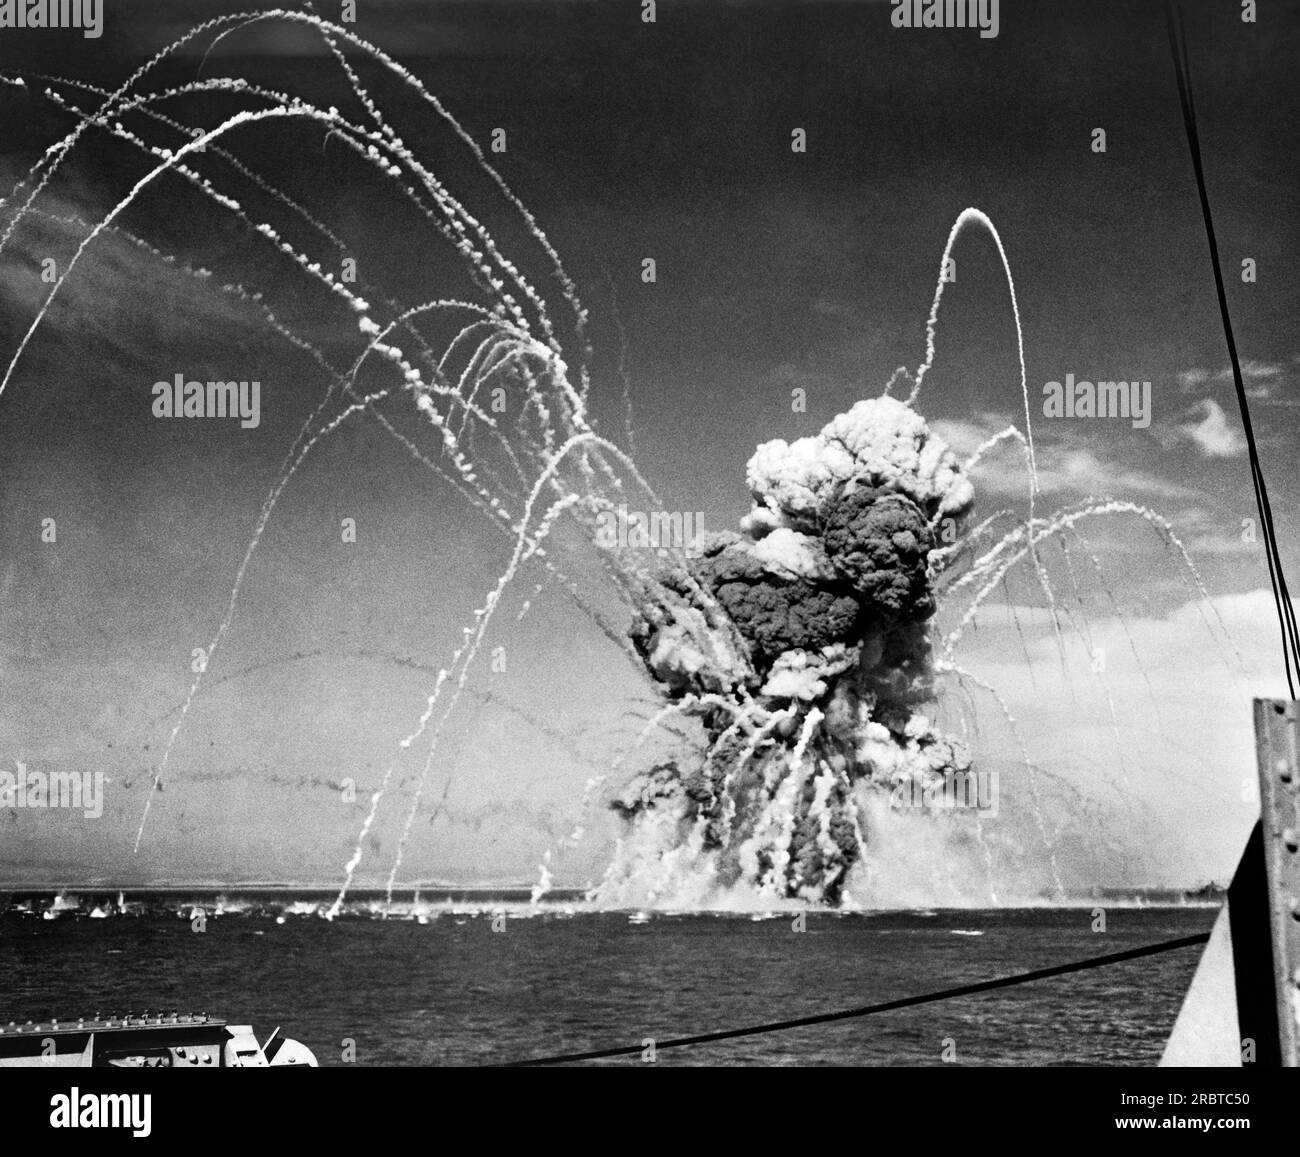 Italie : juillet 1943 un cargo américain explose après avoir été touché par des bombardiers nazis lors d'un raid aérien sur un convoi lors de l'invasion de la Sicile par les forces alliées. Banque D'Images